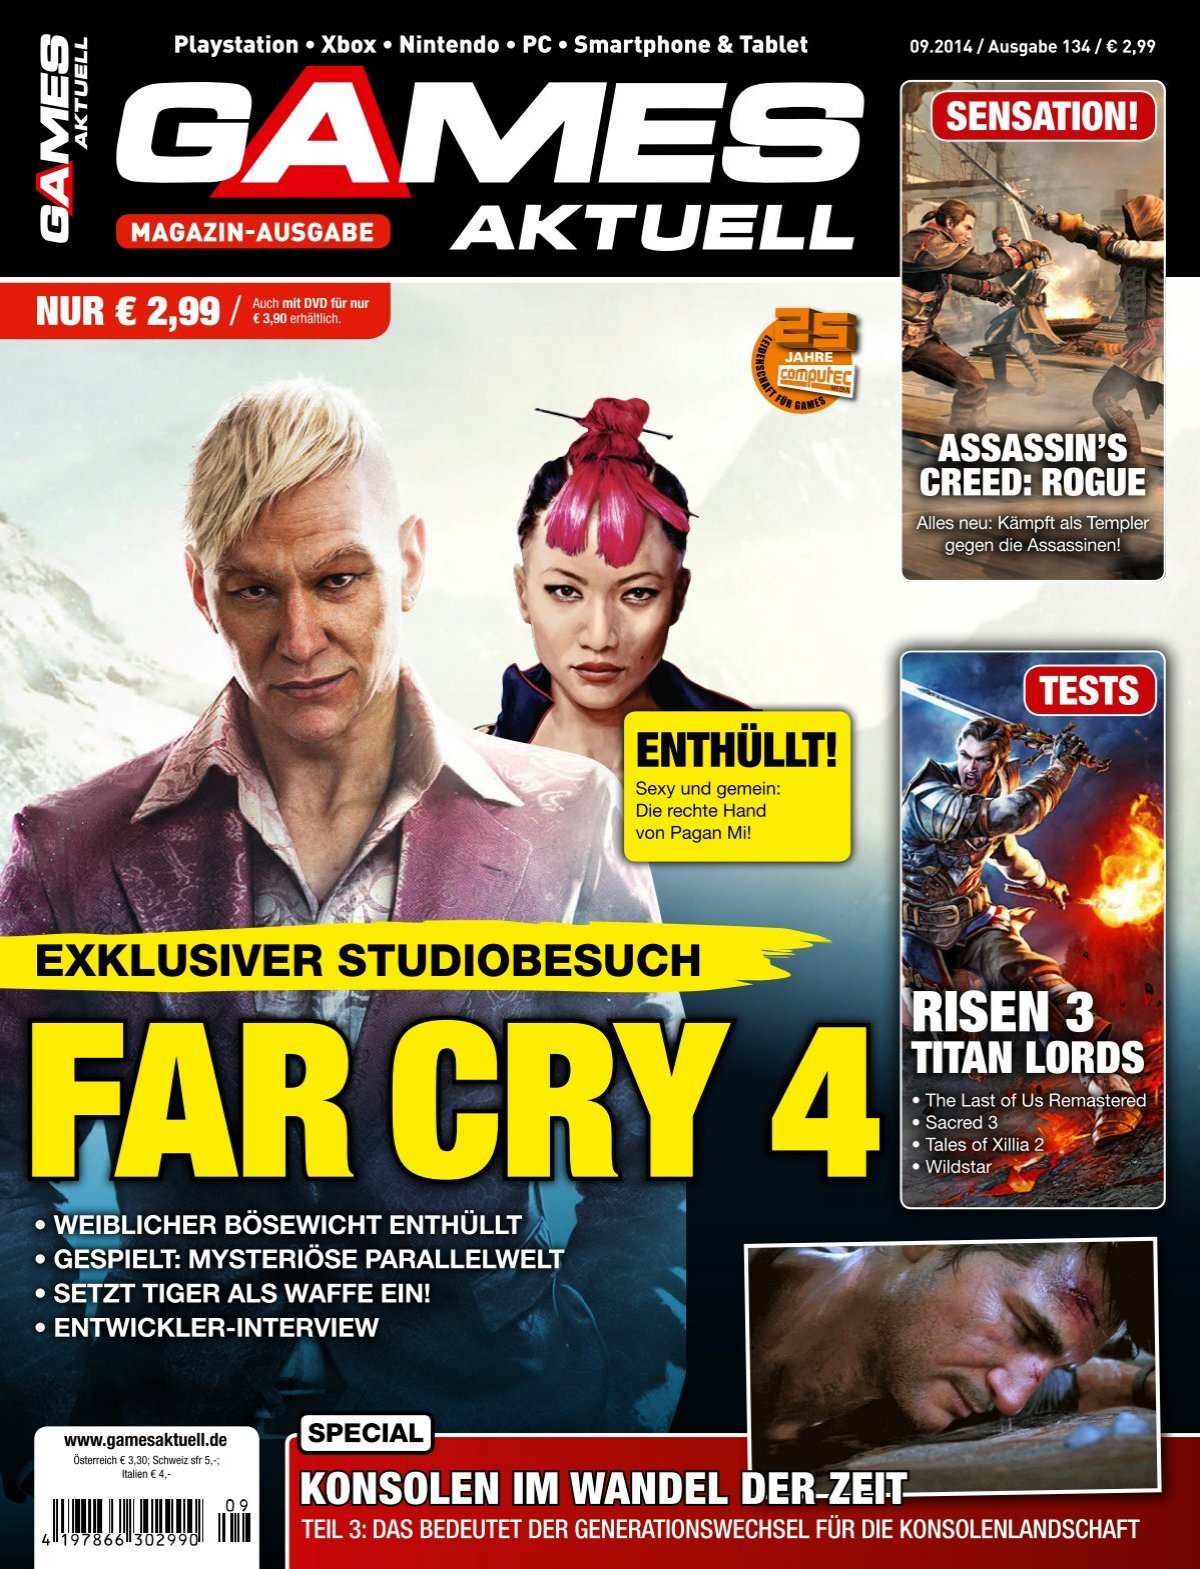 Far Cry 5 im Koop spielen: Fortschritt, Modi & Anleitung